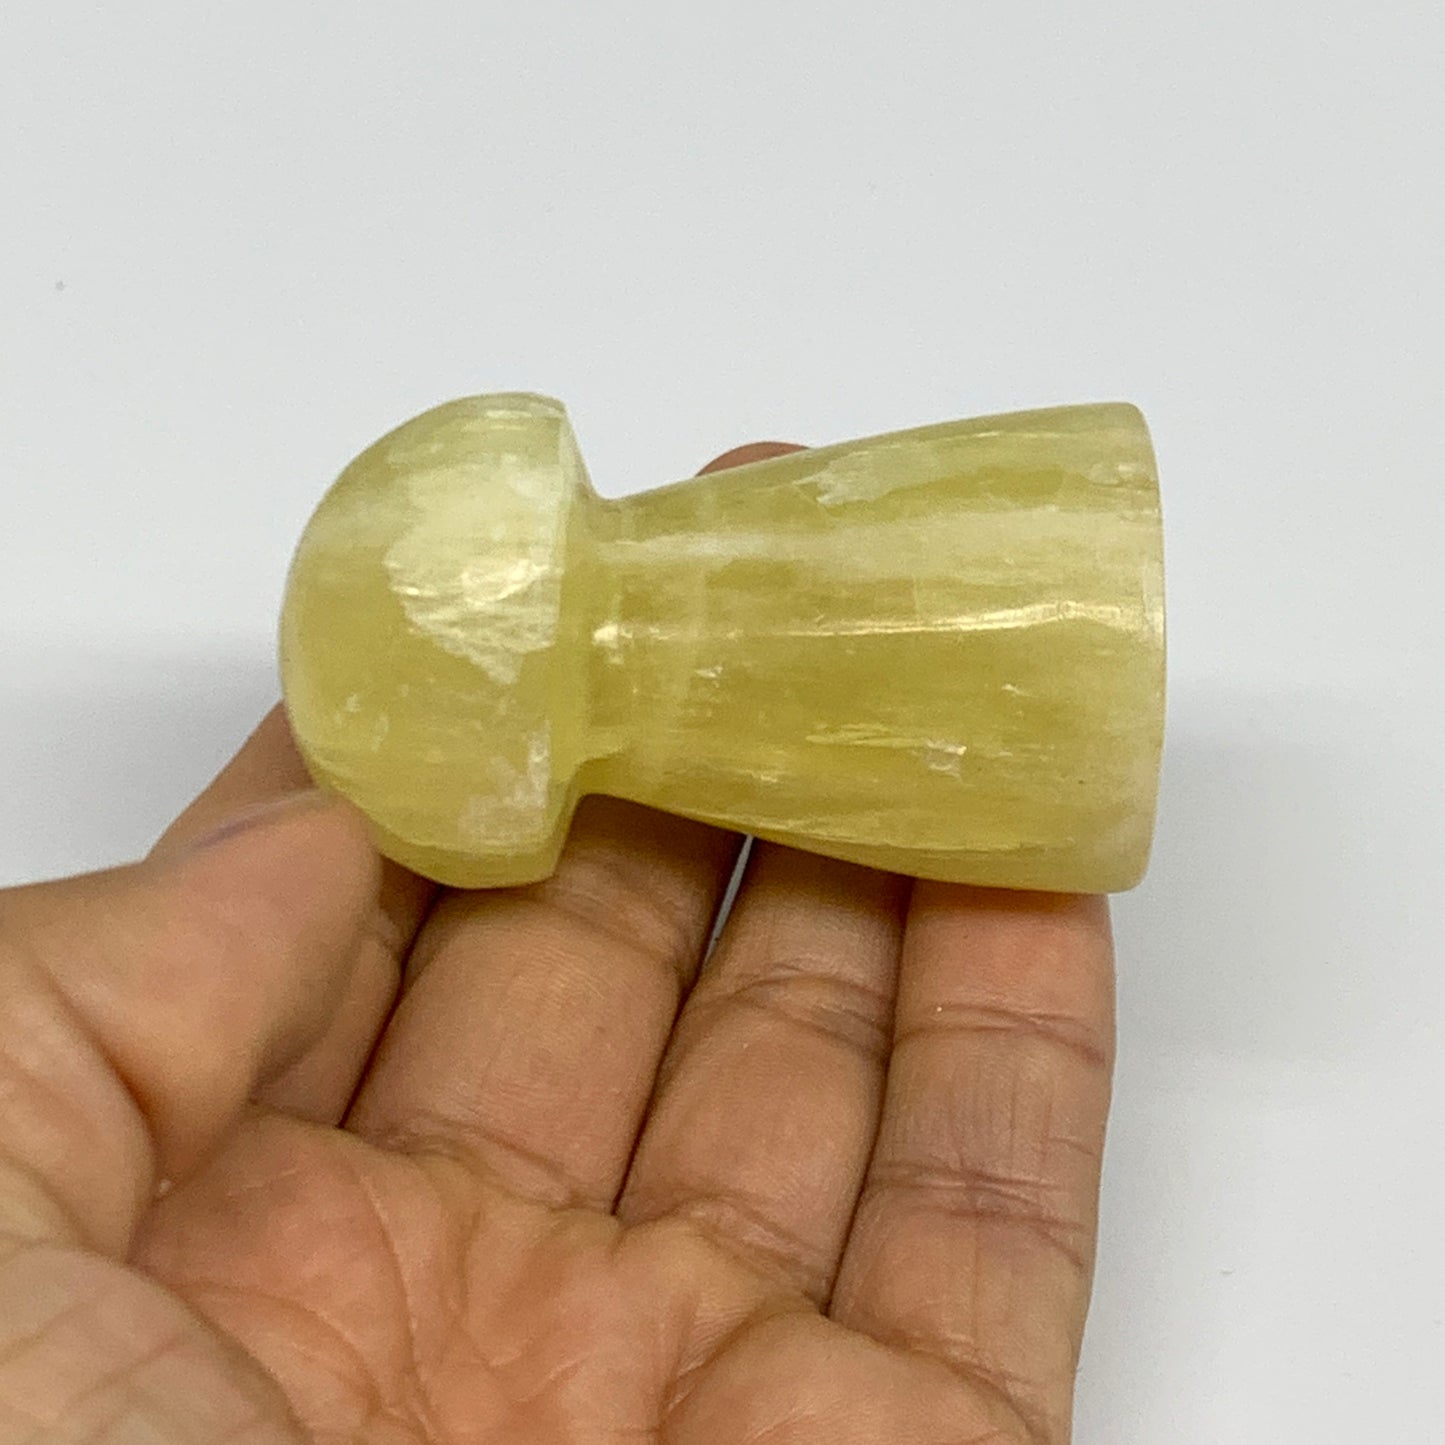 102.3g, 2.2"x1.3" Natural Lemon Calcite Mushroom Gemstone @Pakistan, B31684